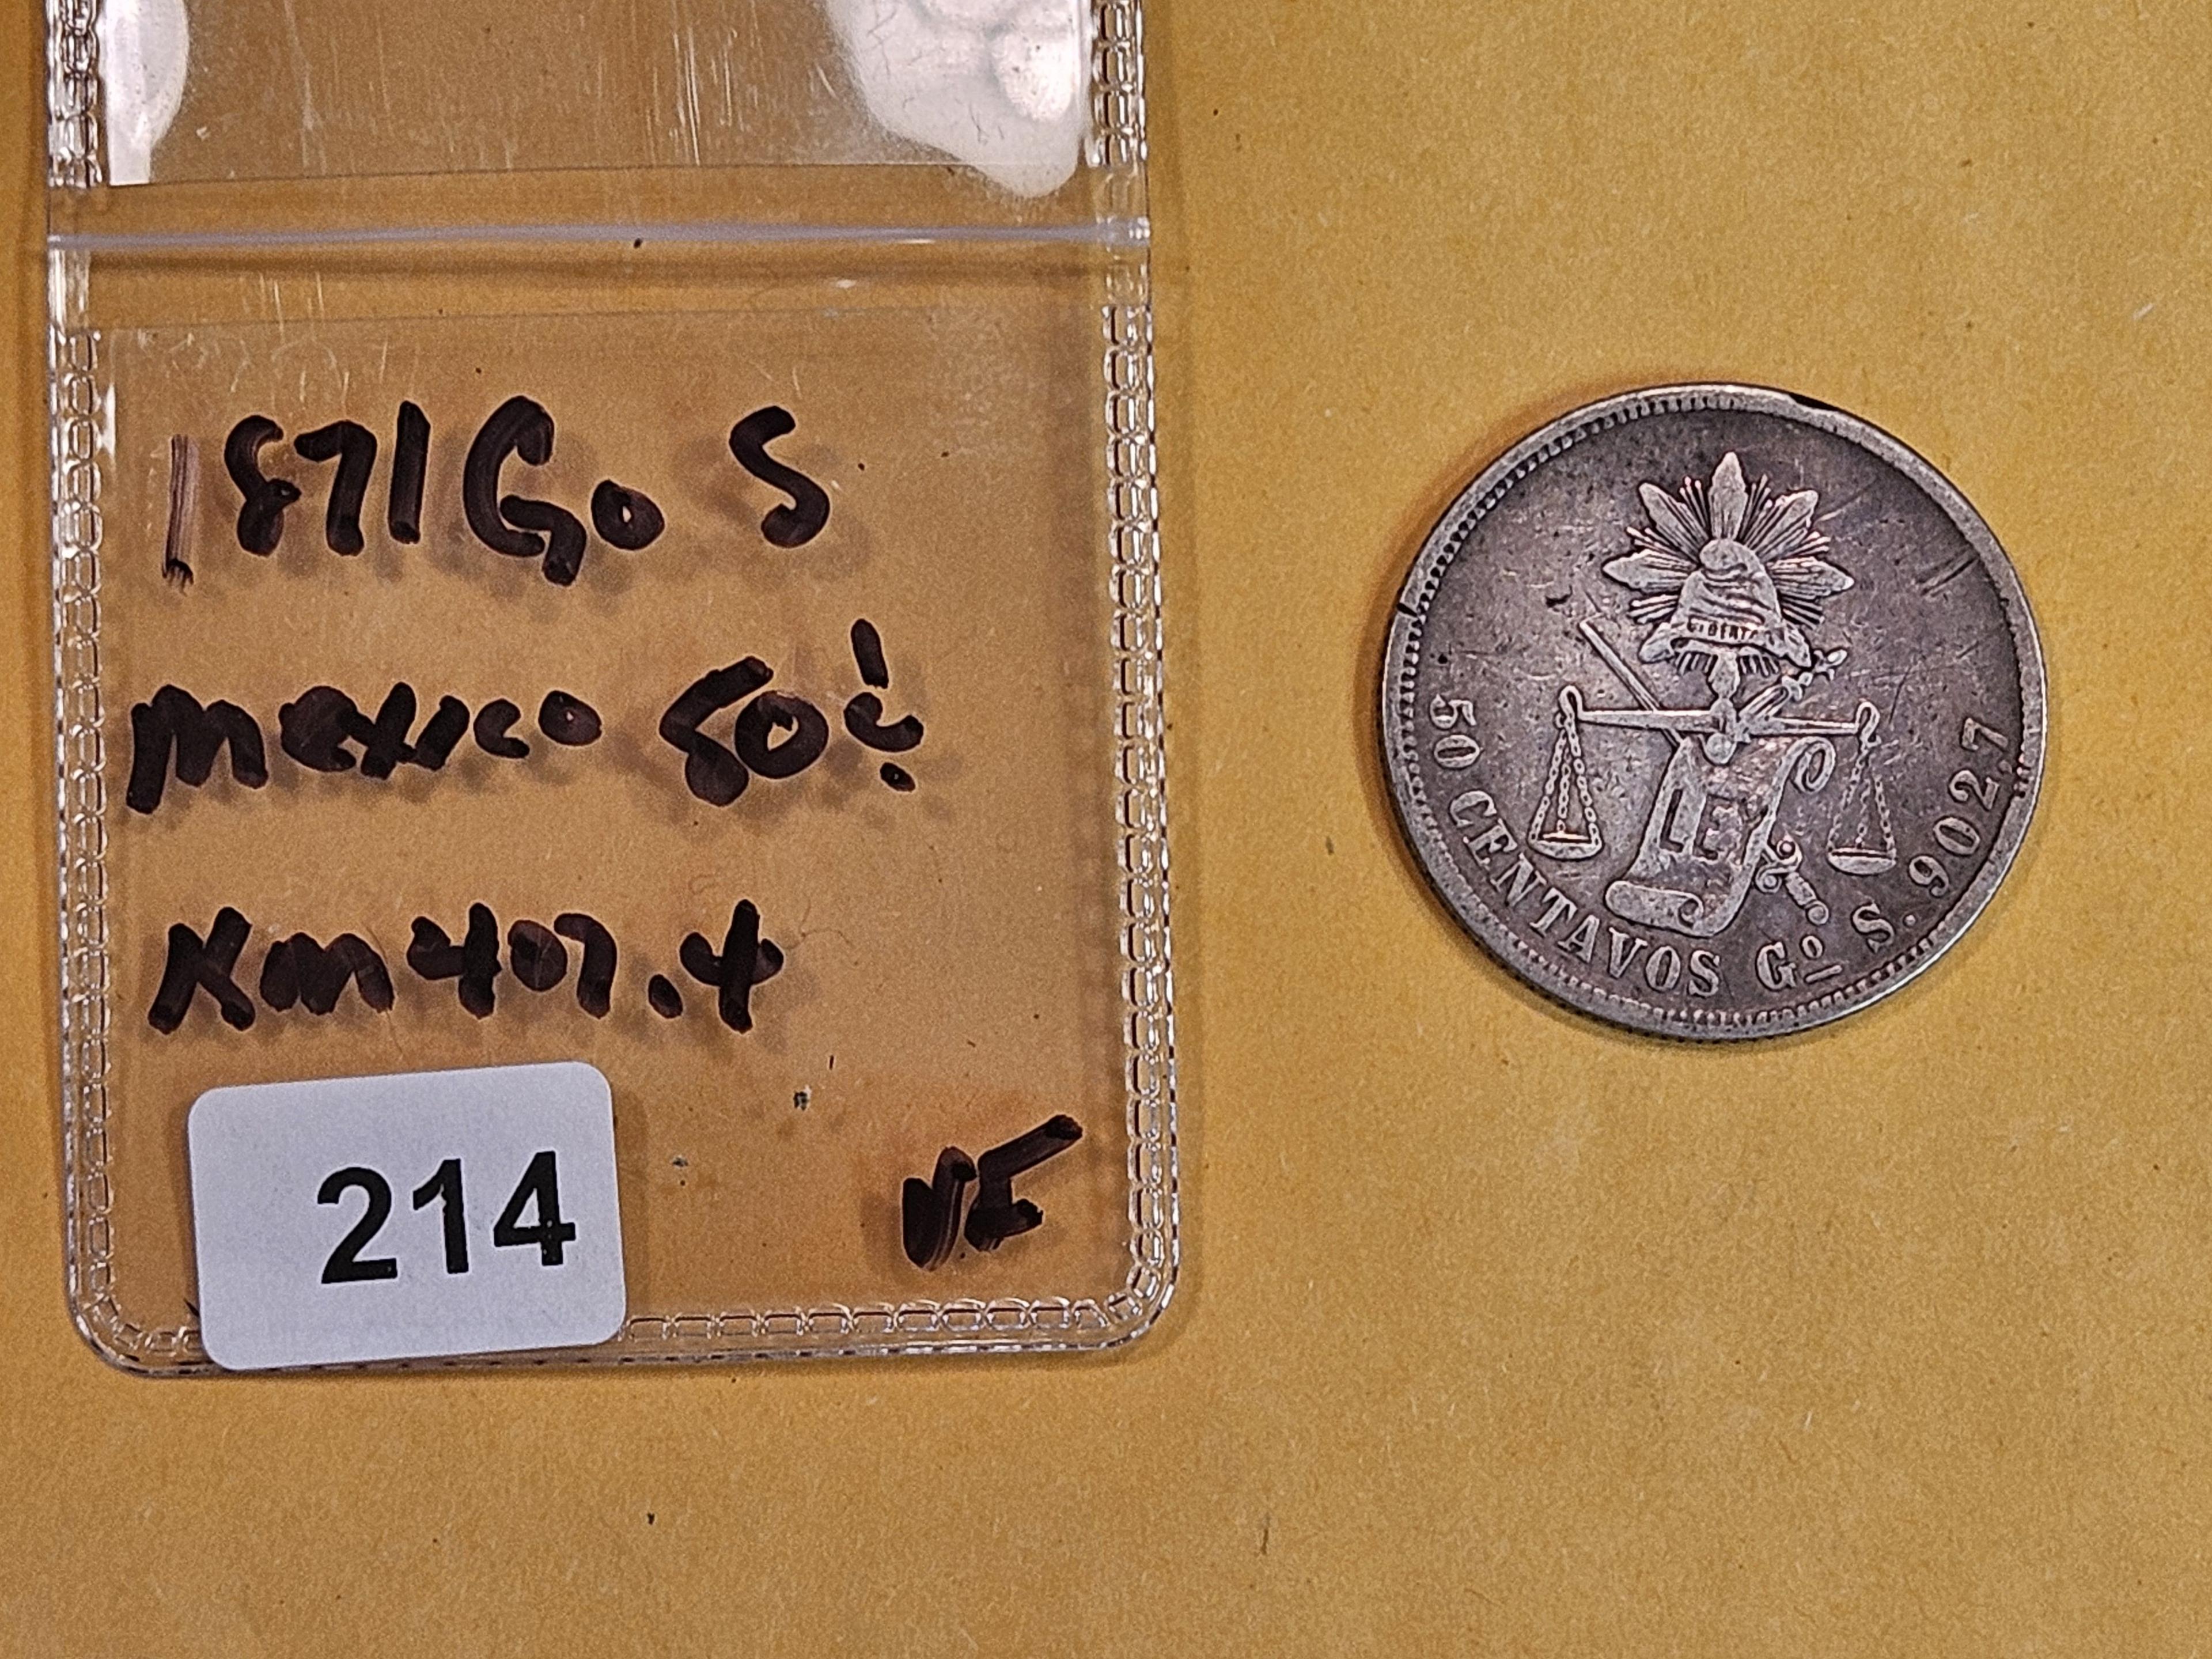 1871Gos Mexico silver 50 centavos in Very Fine